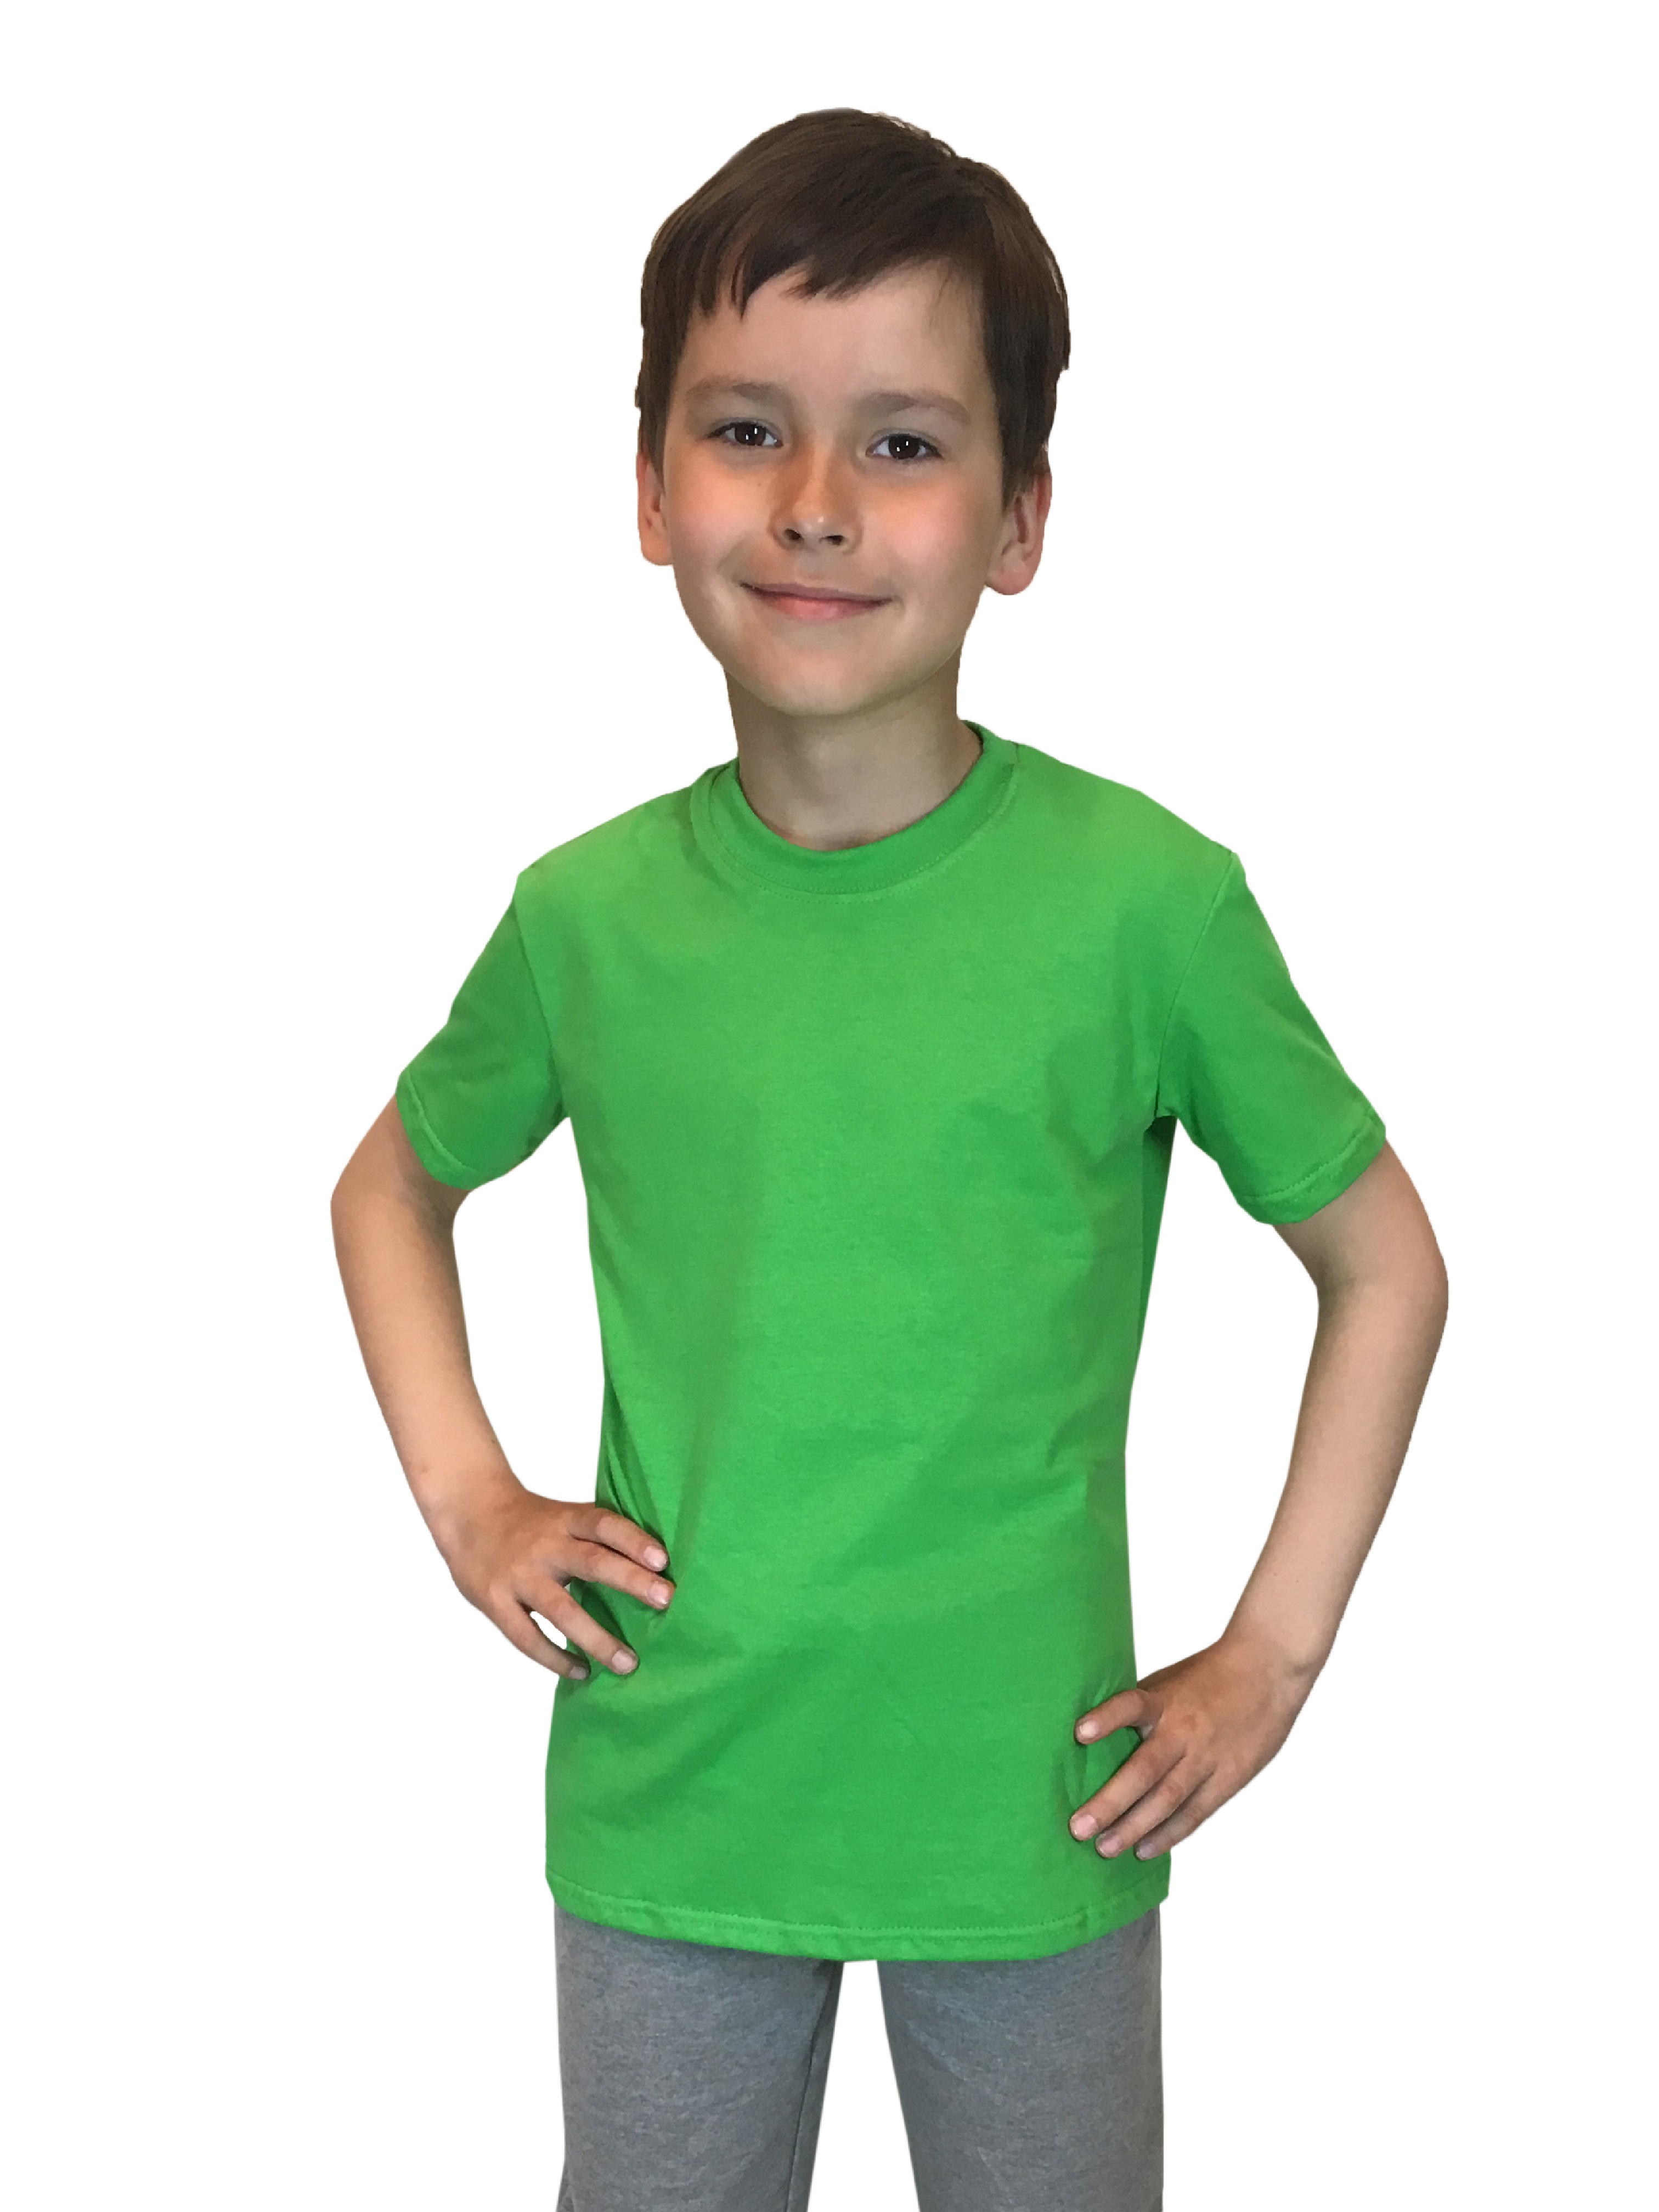 Футболка детская Детрик, зеленый размер 122, Ф-1-66